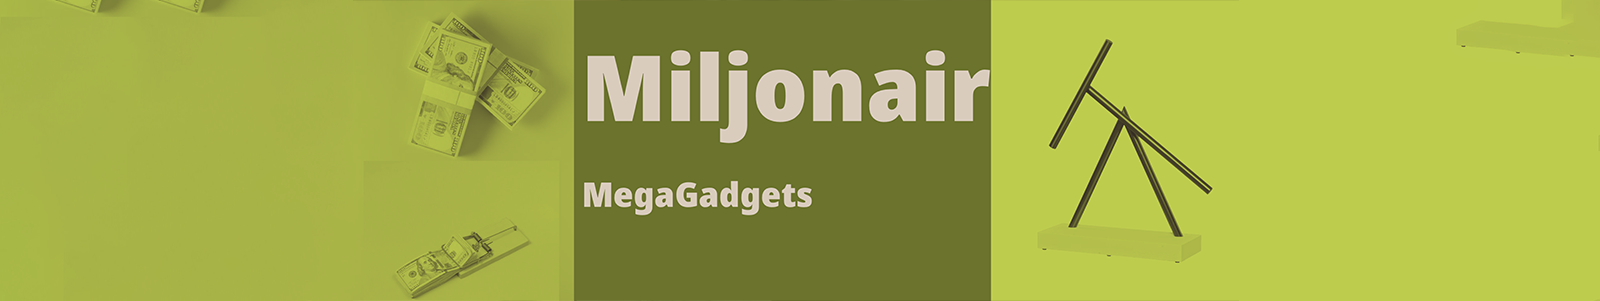 Miljonairs Gadgets